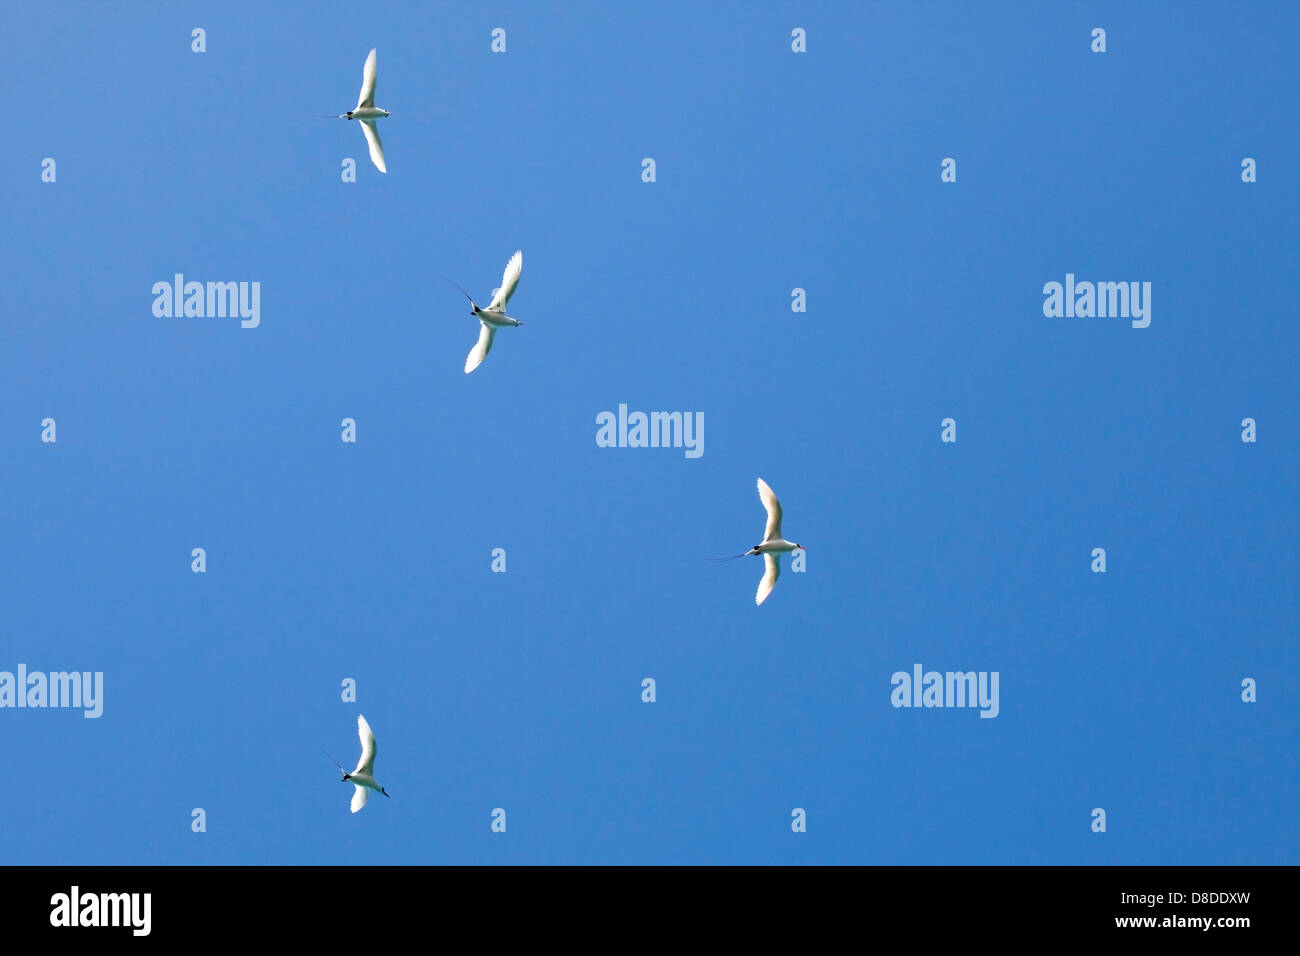 Tropicbirds à queue rouge affichant un vaisseau d'audience aérien dans un ciel bleu clair, îles hawaïennes (Phaethon rubricauda rothschildi) Banque D'Images